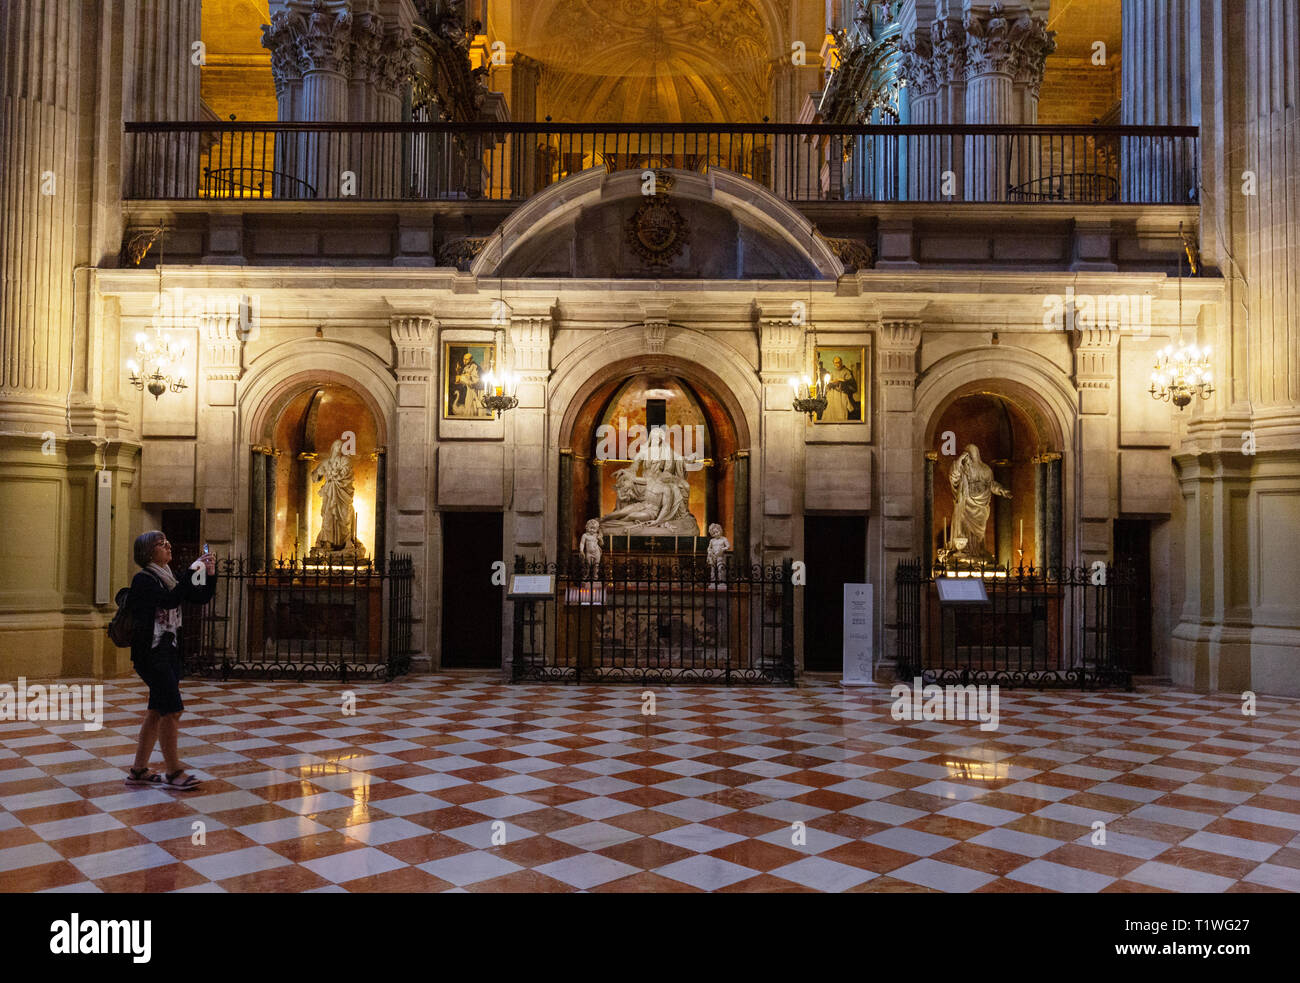 Die Kathedrale von Malaga Innenraum - der Kapellen der Retrochoir und ein Tourist, ein Foto, die Kathedrale von Malaga, Malaga, Andalusien, Spanien Stockfoto